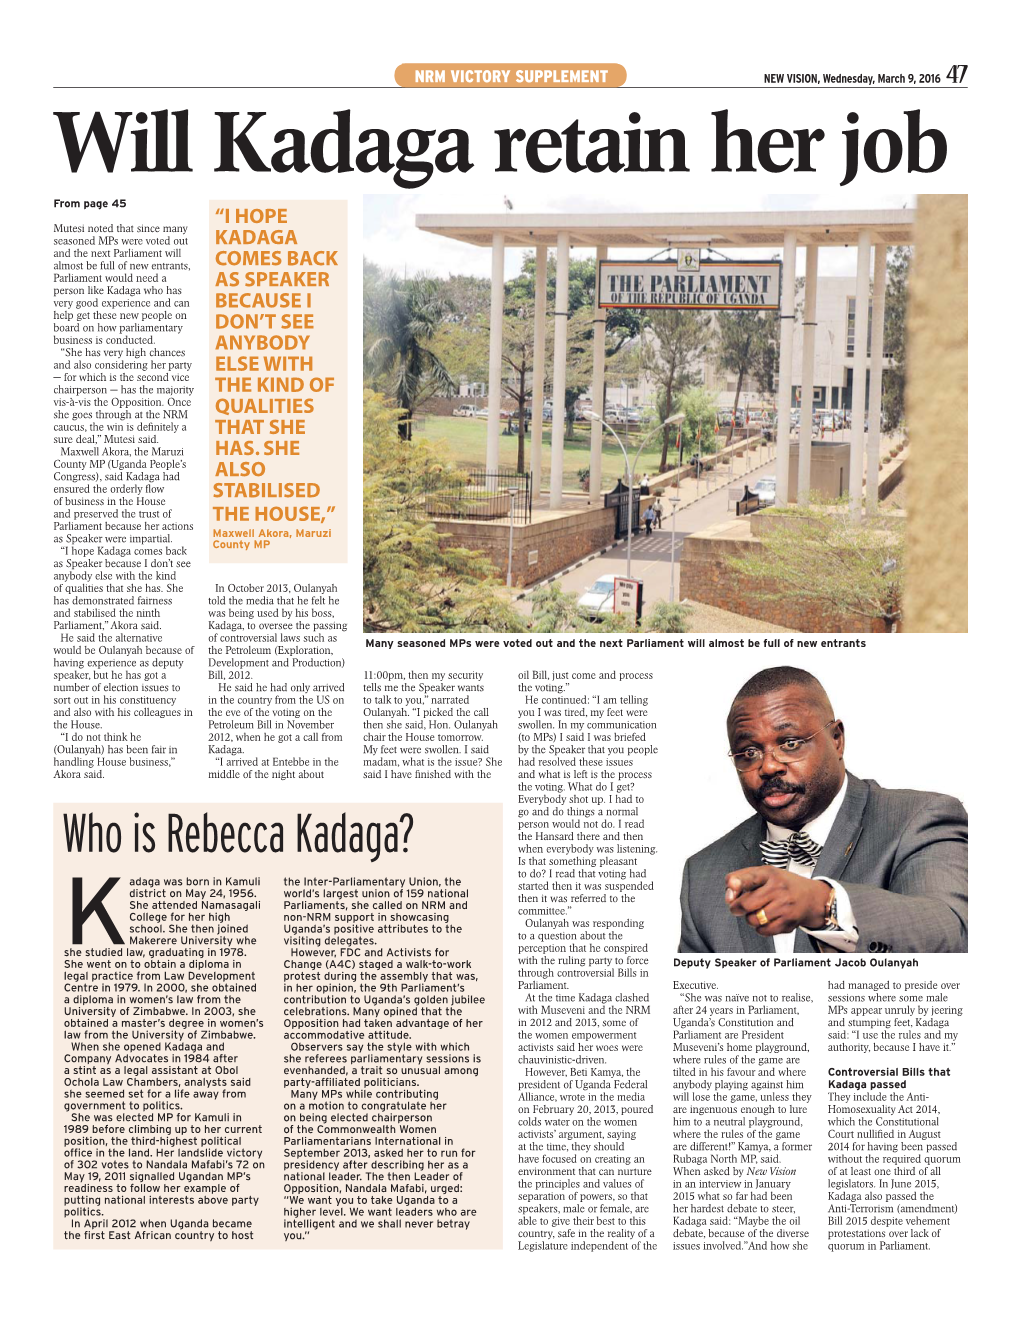 Will Kadaga Retain Her Job